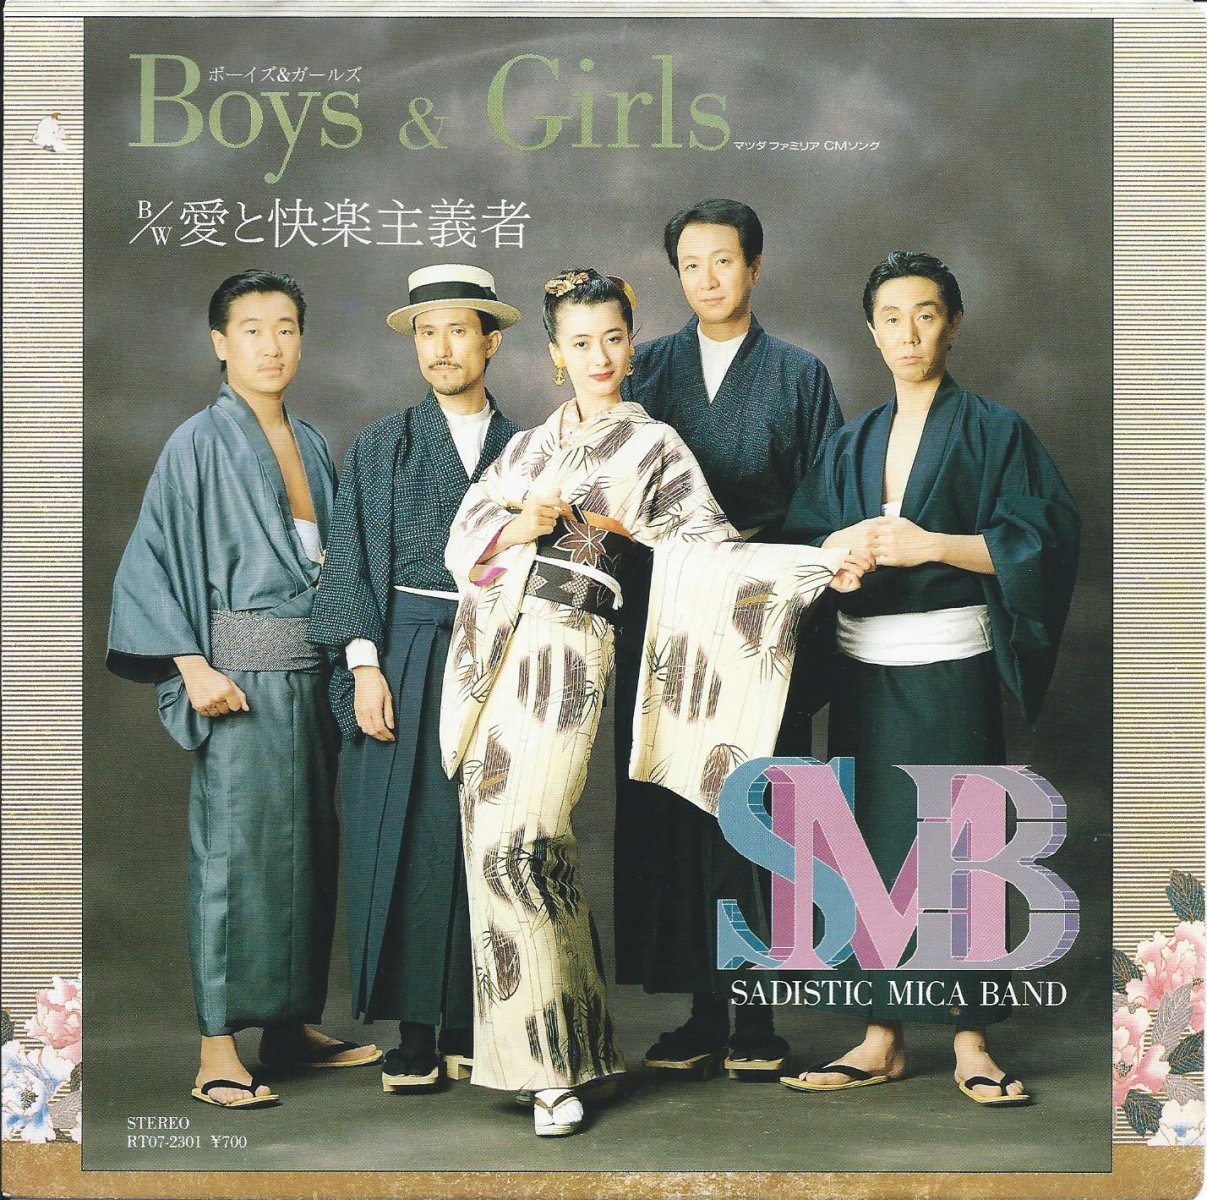 サディスティック・ミカ・バンド SADISTIC MIKA BAND / BOYS & GIRLS (7